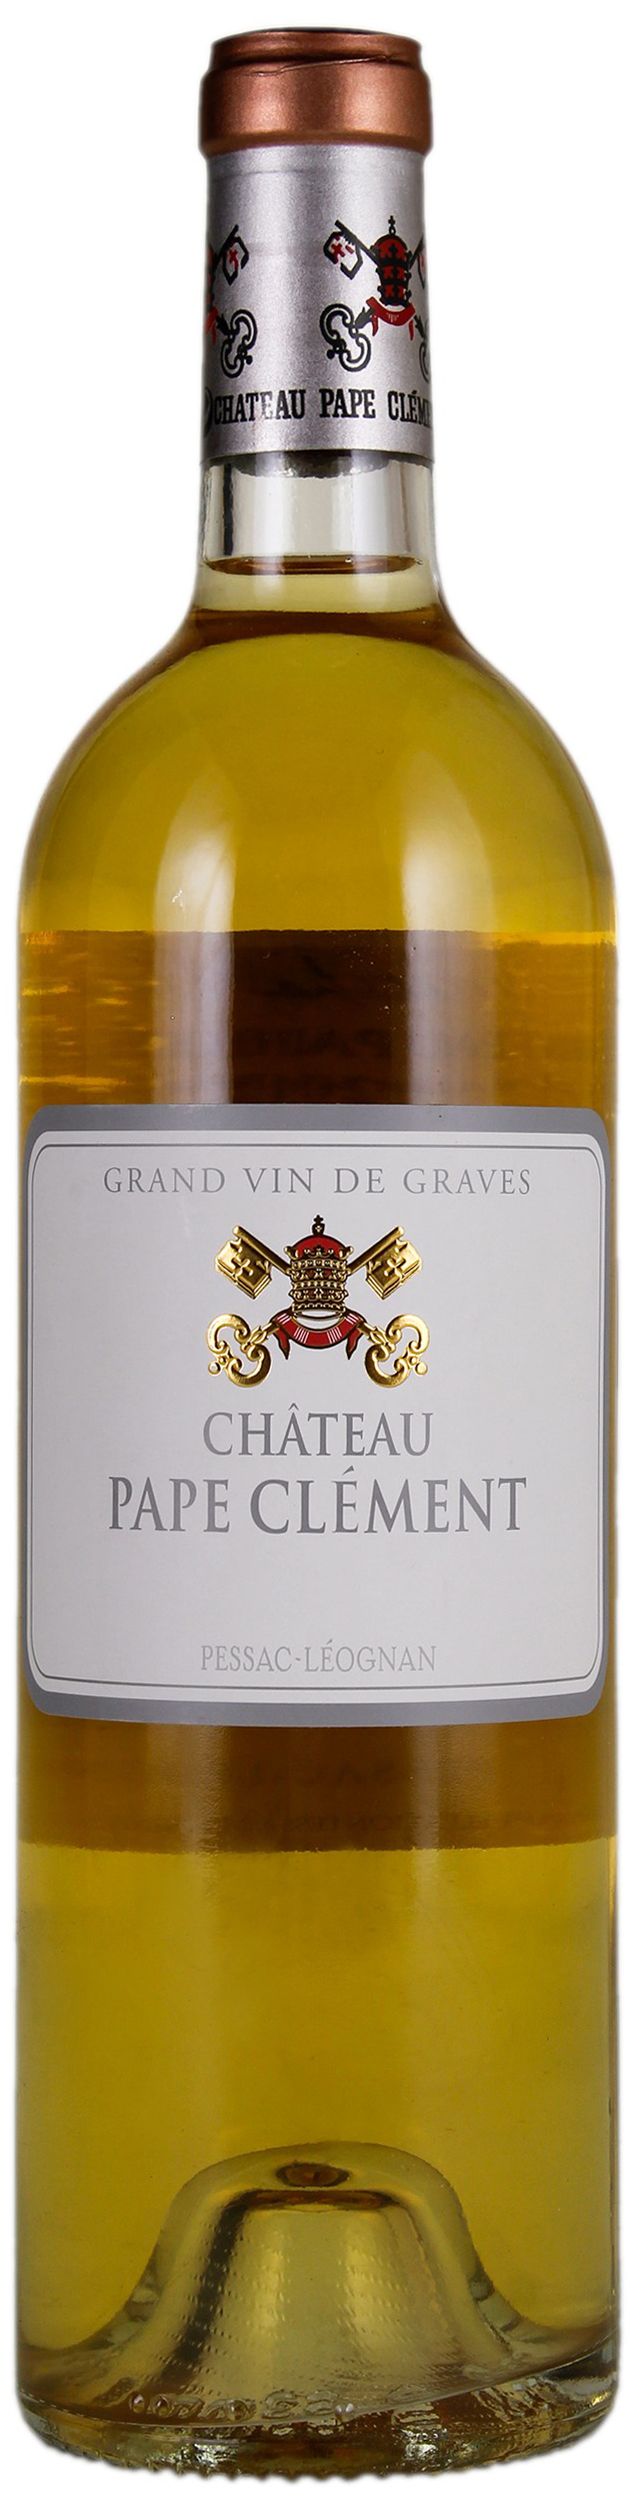 Chateau Pape Clement, Blanc Grand Cru Classe De Graves, 2009